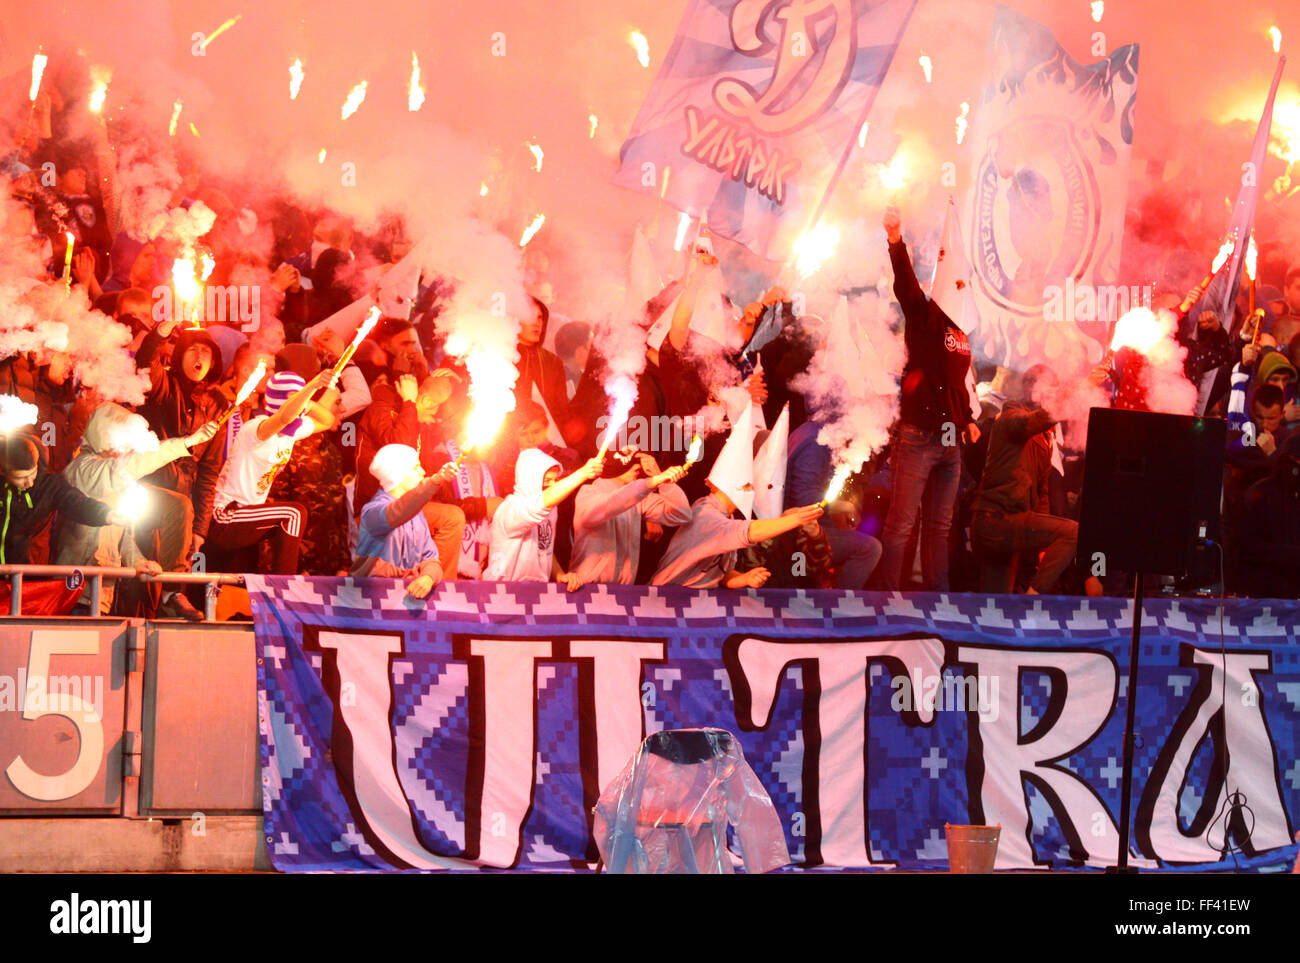 FC Dynamo Kyiv ultras (ultra sostenitori) bruciare flares durante l'Ucraina partita di campionato contro Shakhtar Donetsk Foto Stock